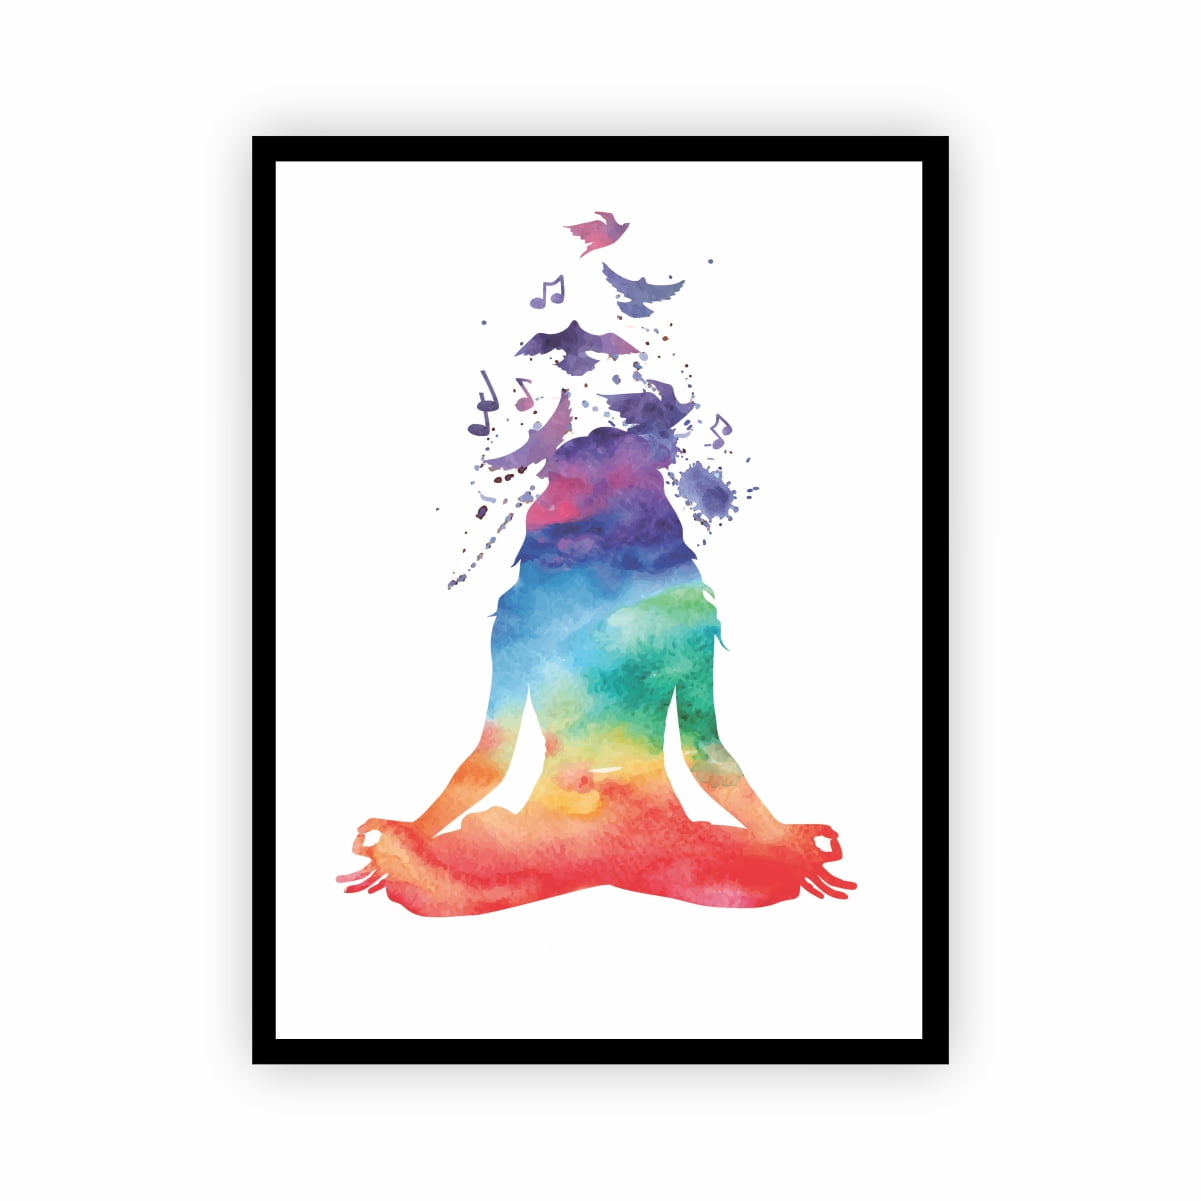 Quadro Namastê - Meditação - Yoga - Reiki - Chakra com Moldura